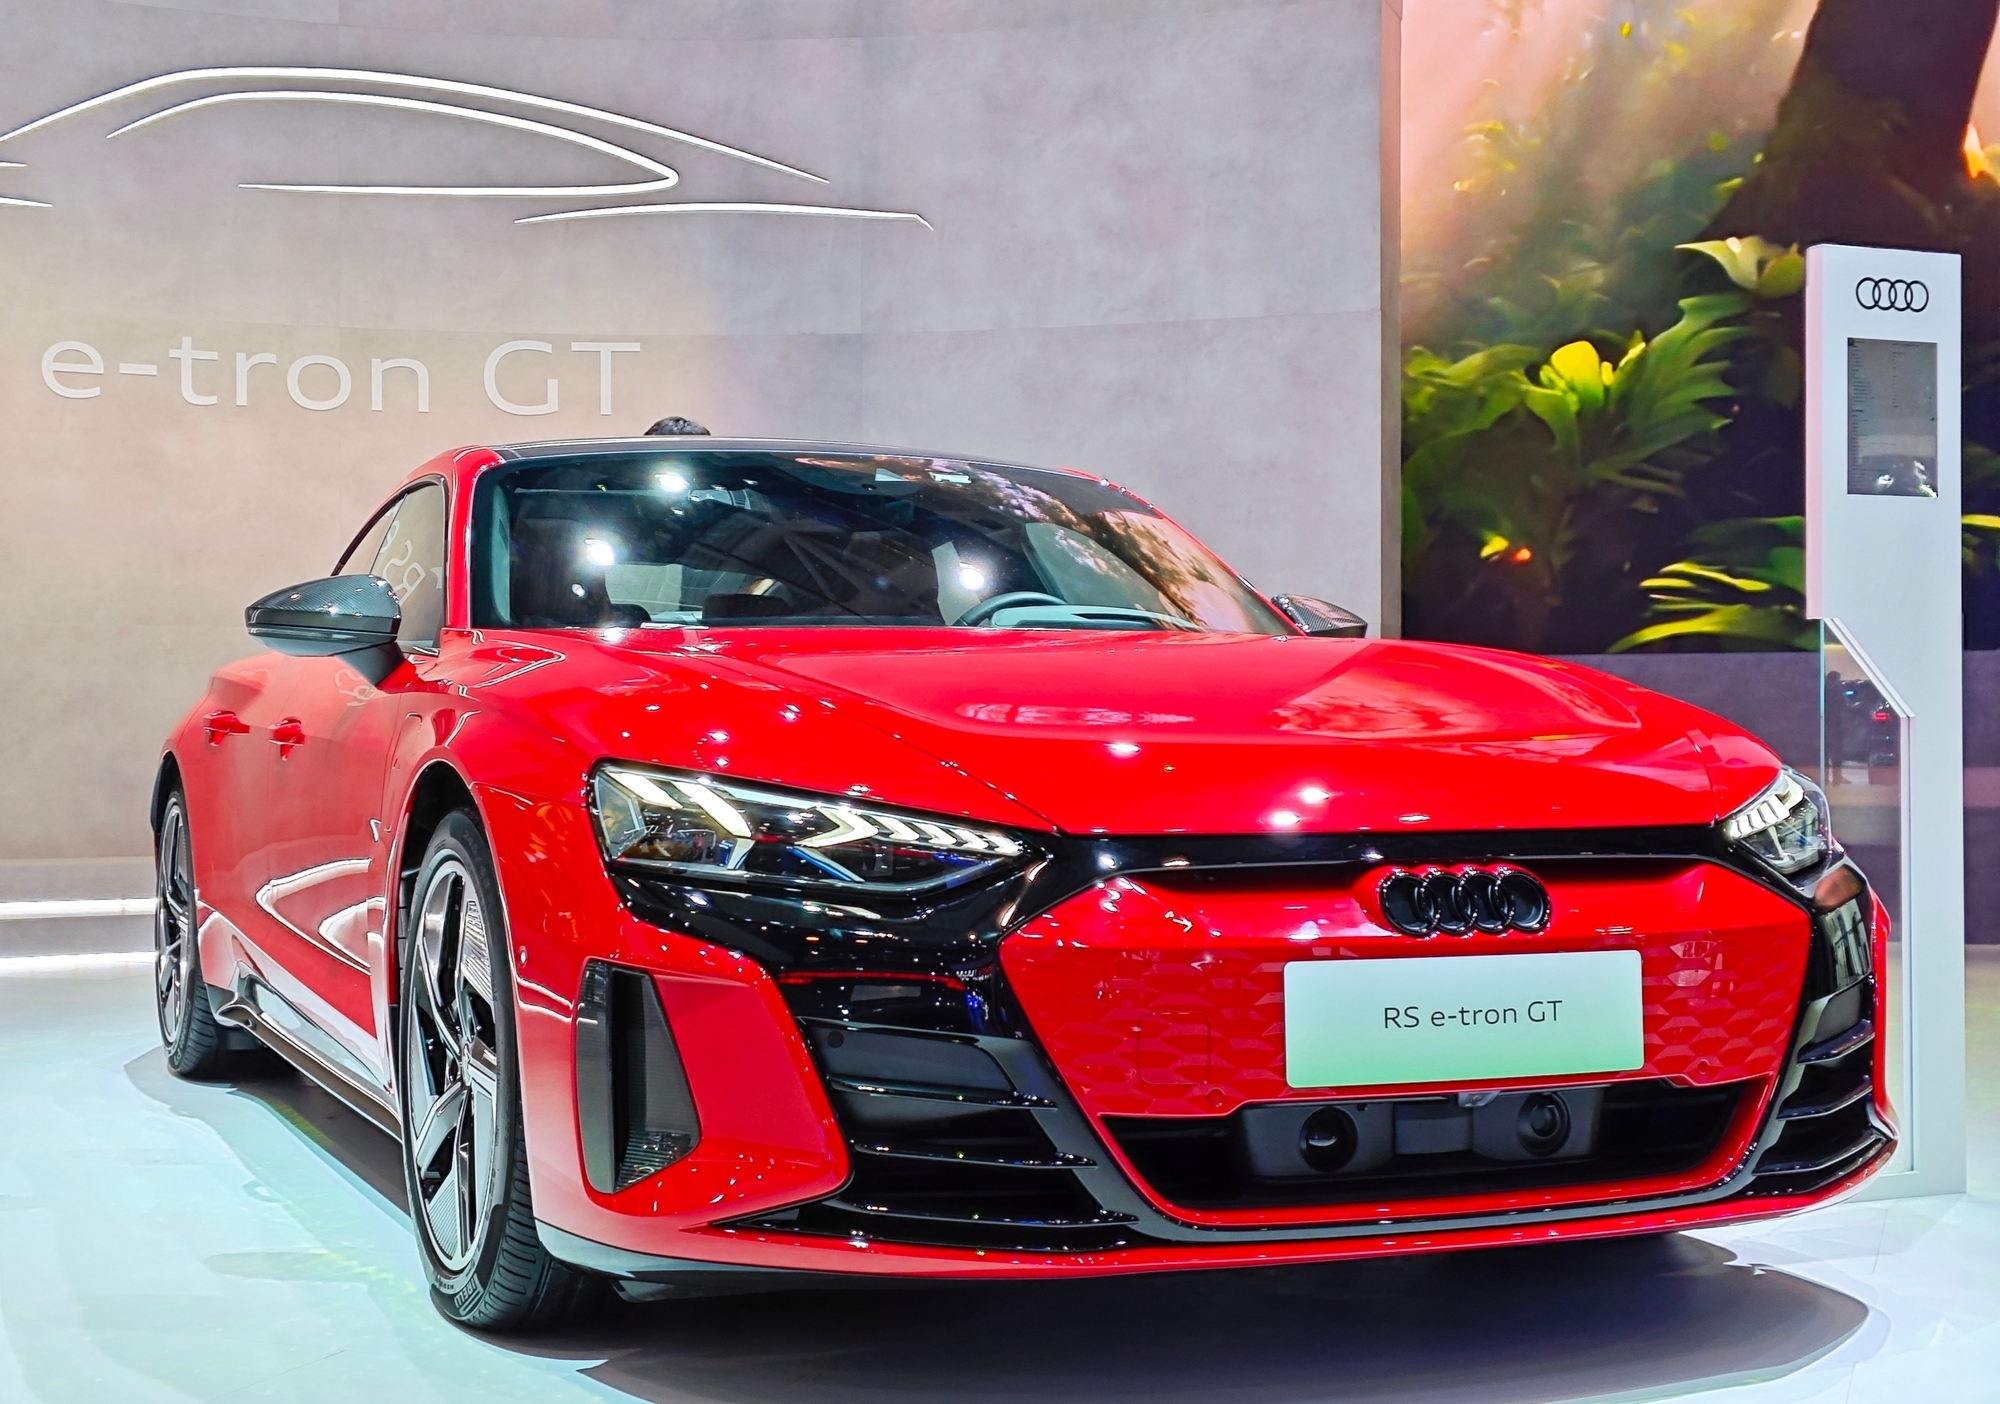 À cause de batteries défectueuses et de risques d'incendie, Audi rappelle des e-tron GT et RS e-tron GT